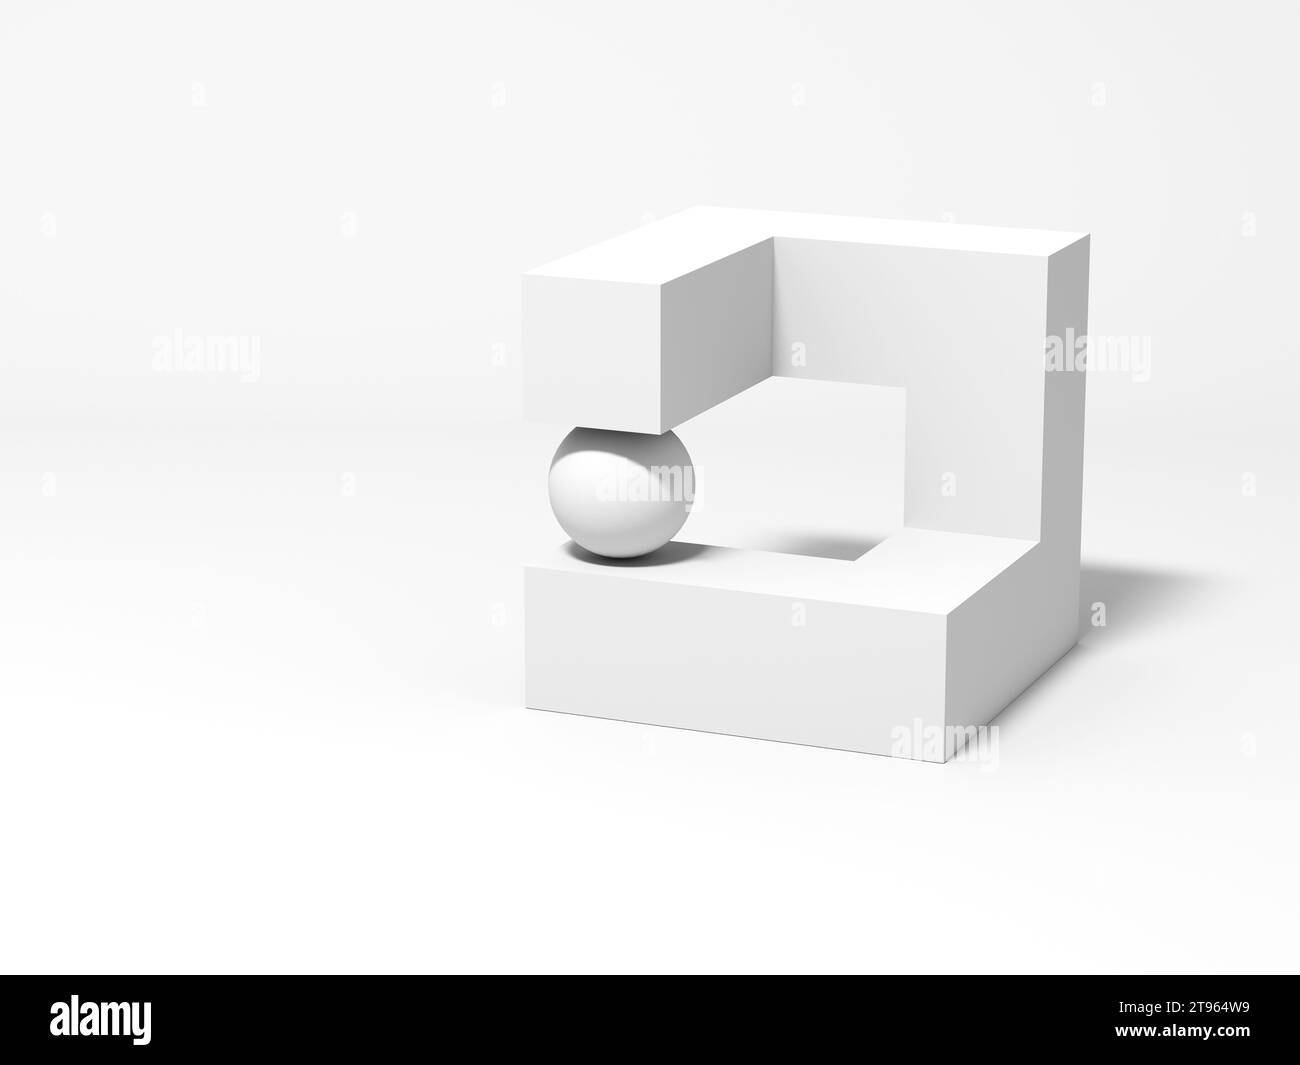 Installation géométrique blanche abstraite avec une sphère remplaçant le segment manqué d'une boîte englobante, illustration de rendu 3D. Banque D'Images